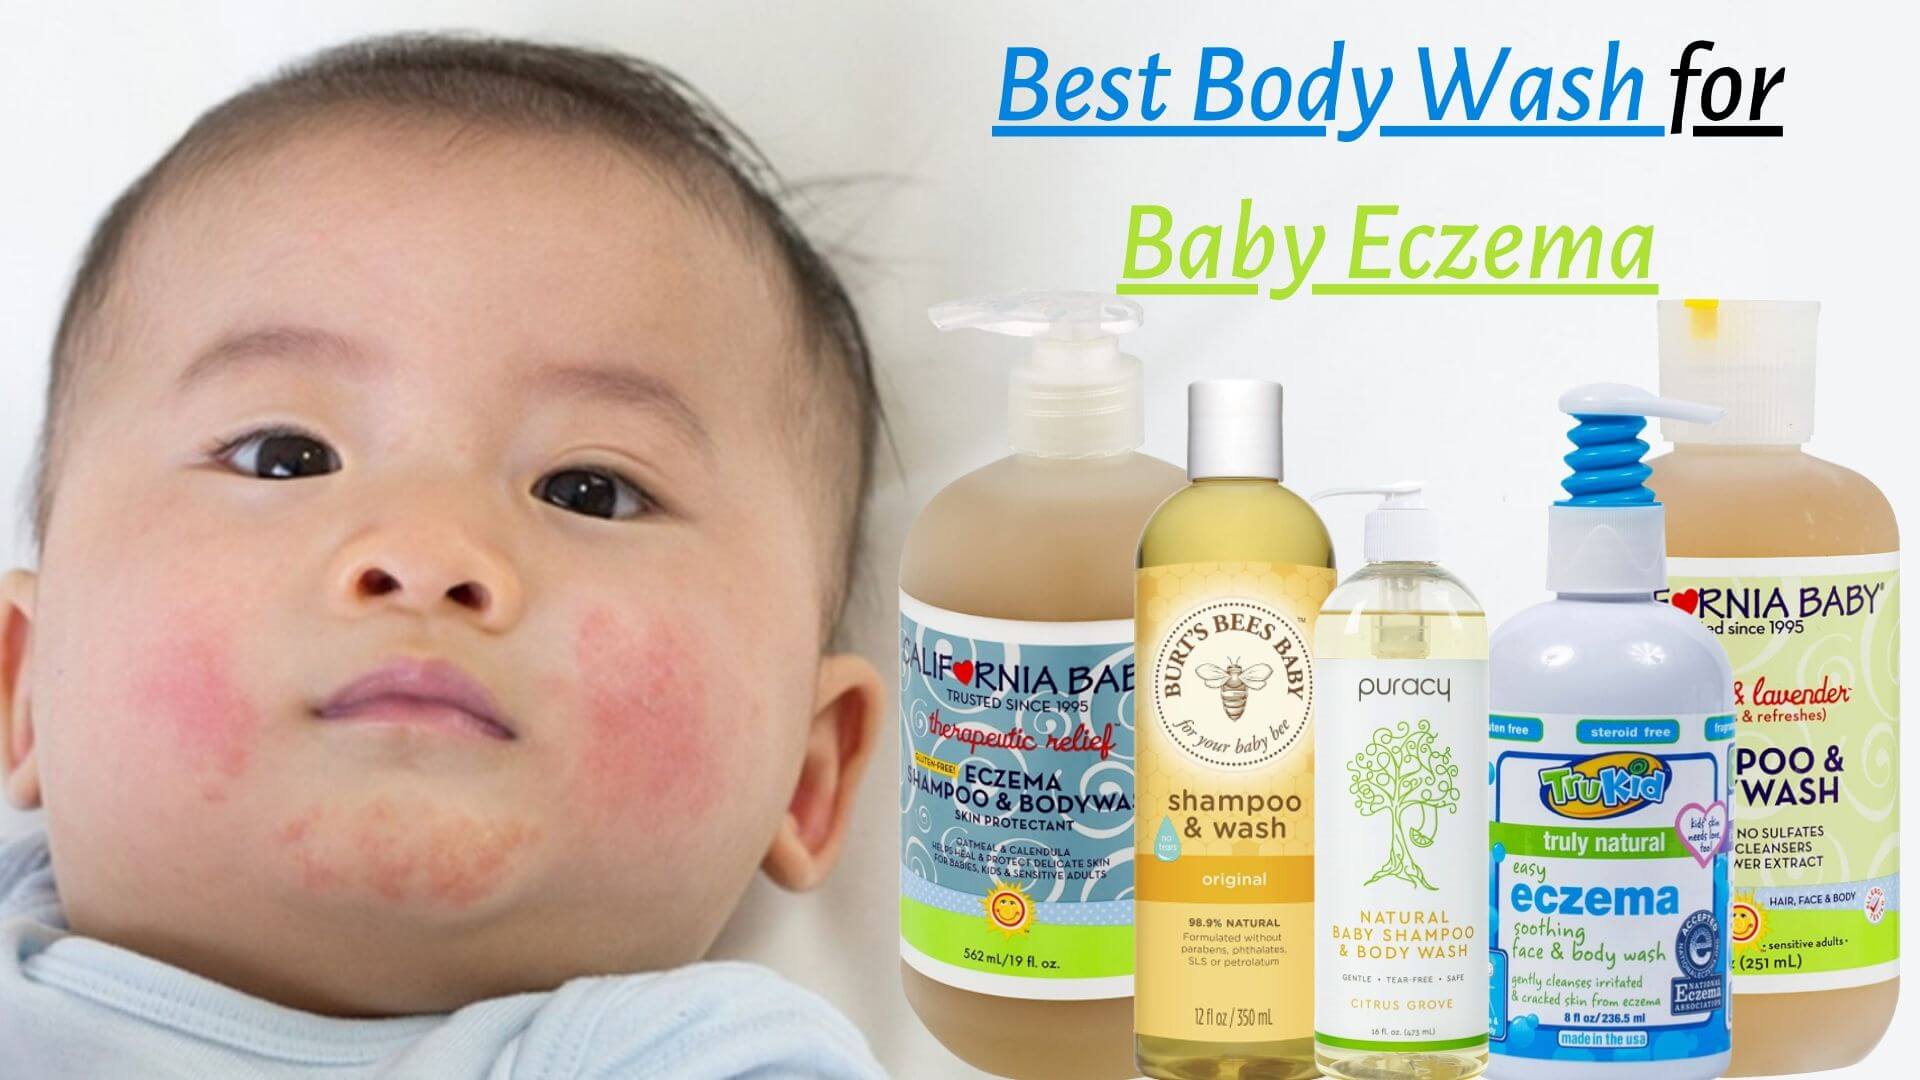 Best Body Wash for Baby Eczema